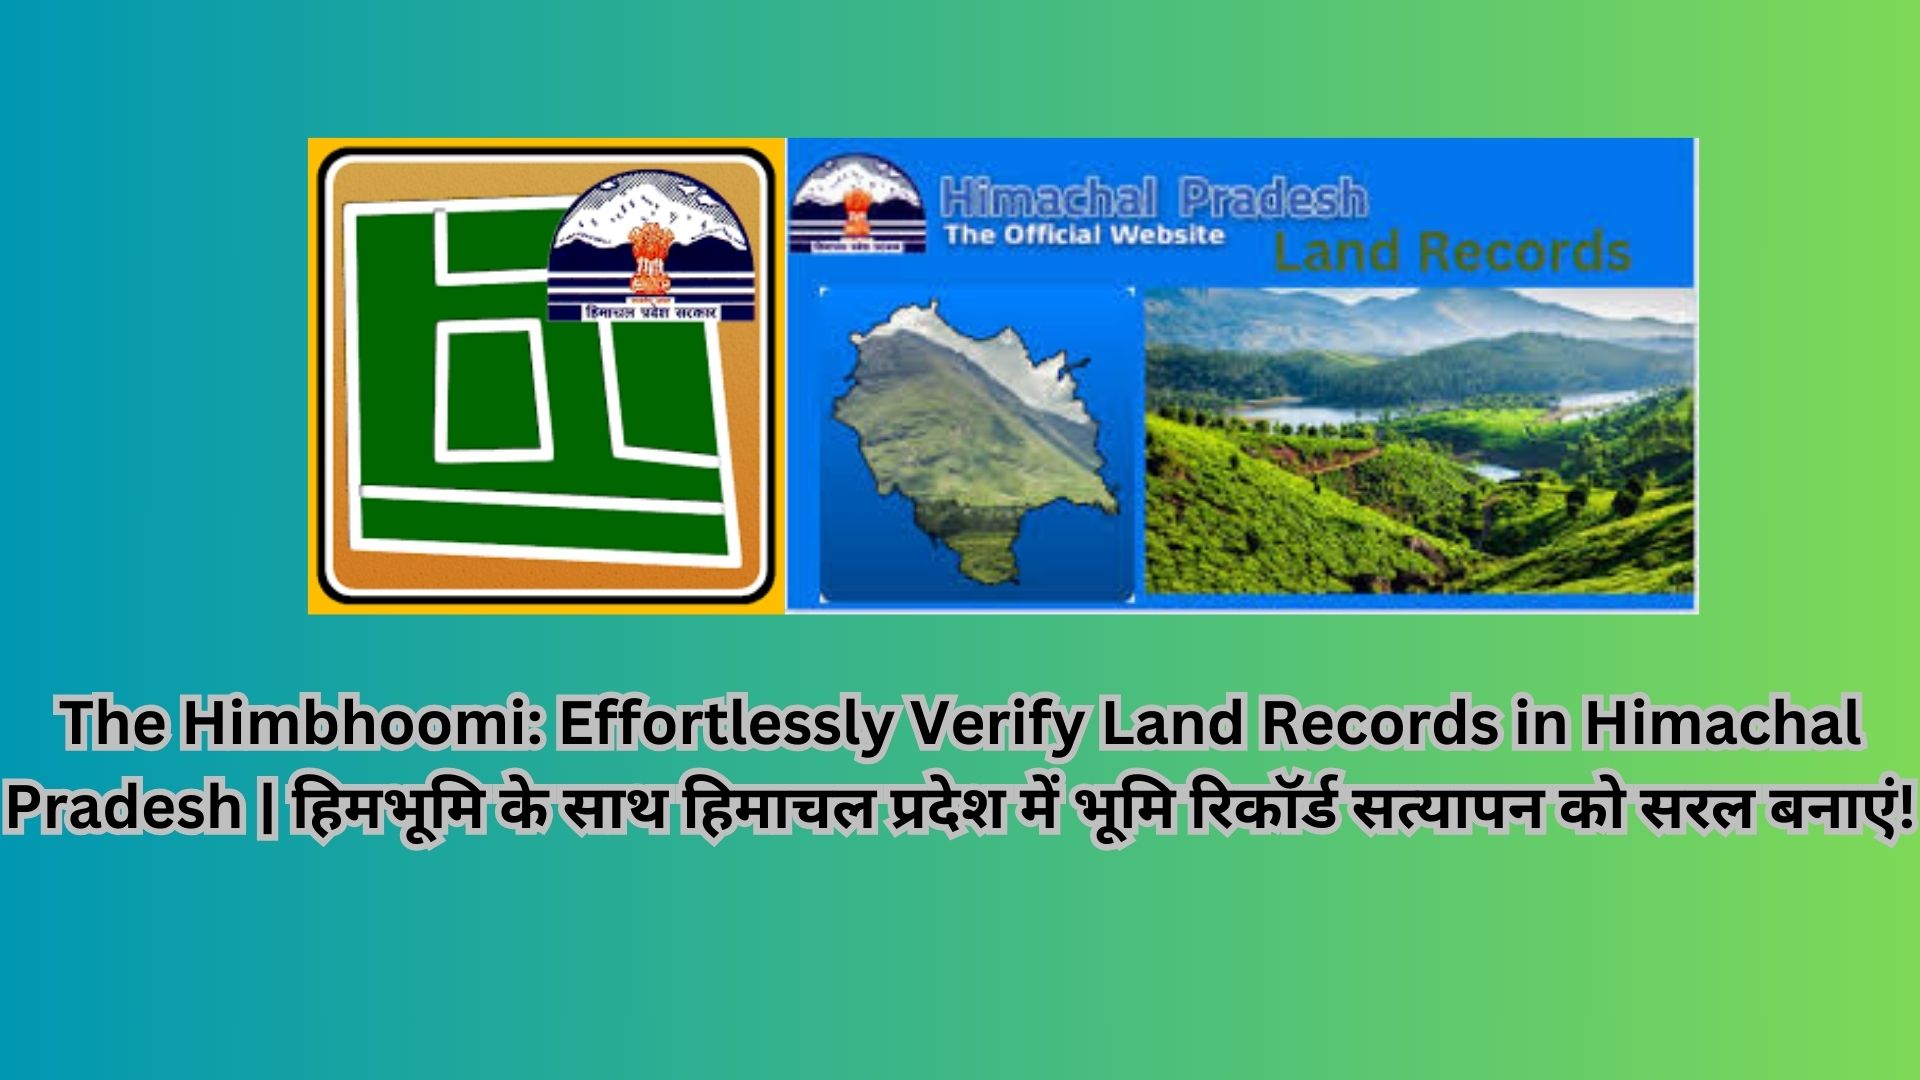 The Himbhoomi: Effortlessly Verify Land Records in Himachal Pradesh | हिमभूमि के साथ हिमाचल प्रदेश में भूमि रिकॉर्ड सत्यापन को सरल बनाएं!